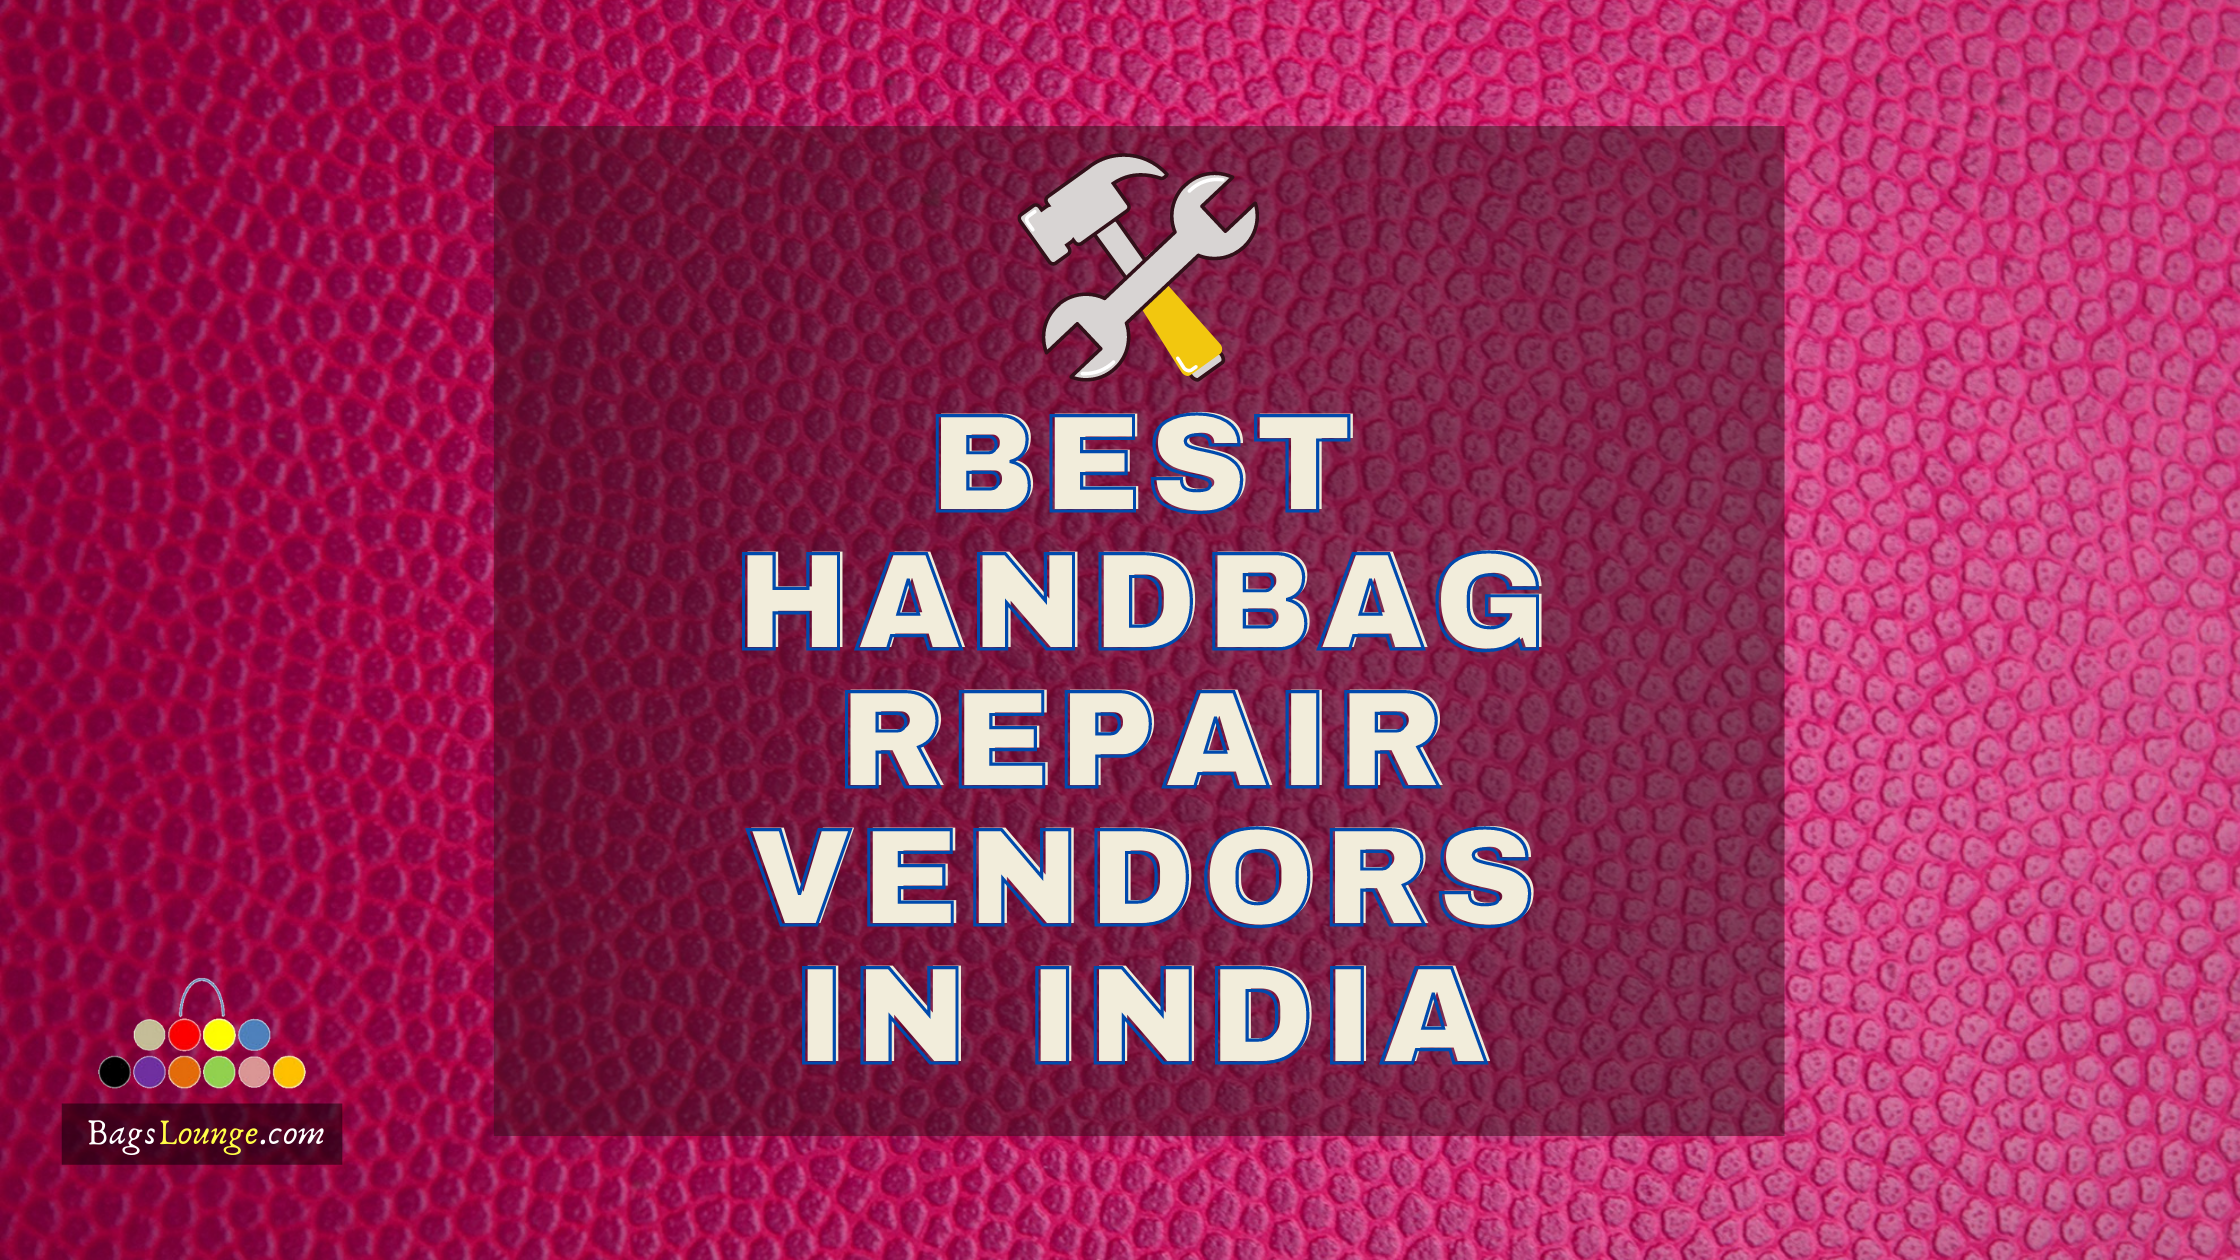 Leather Bag Repair & Dry Cleaning in Mumbai & Delhi - TLL